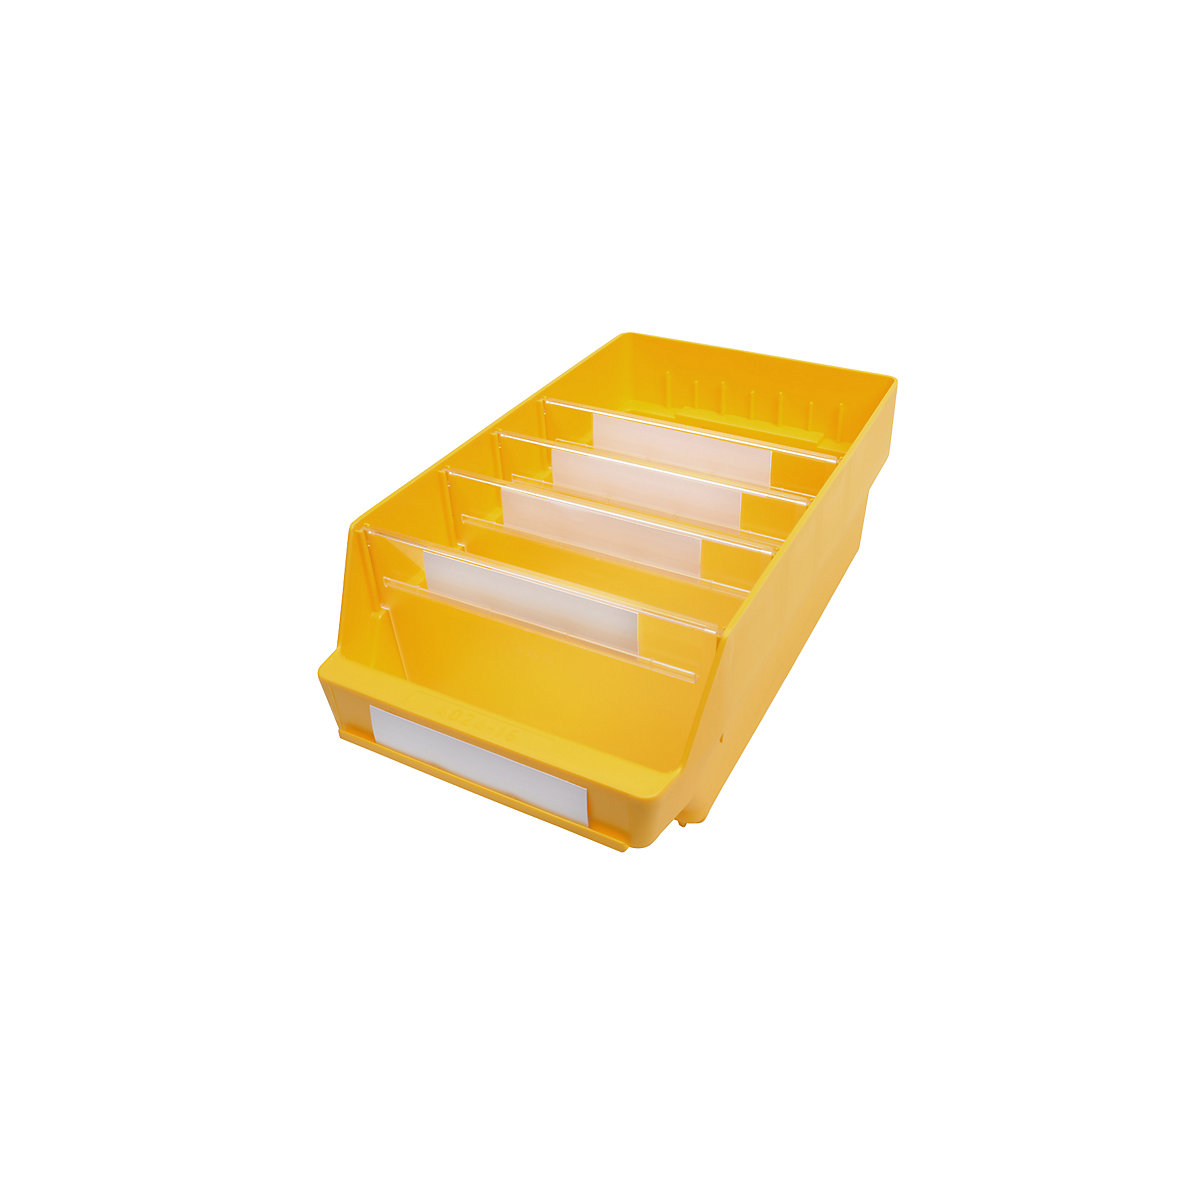 STEMO Regalkasten aus hochschlagfestem Polypropylen, gelb, LxBxH 400 x 240 x 150 mm, VE 10 Stk